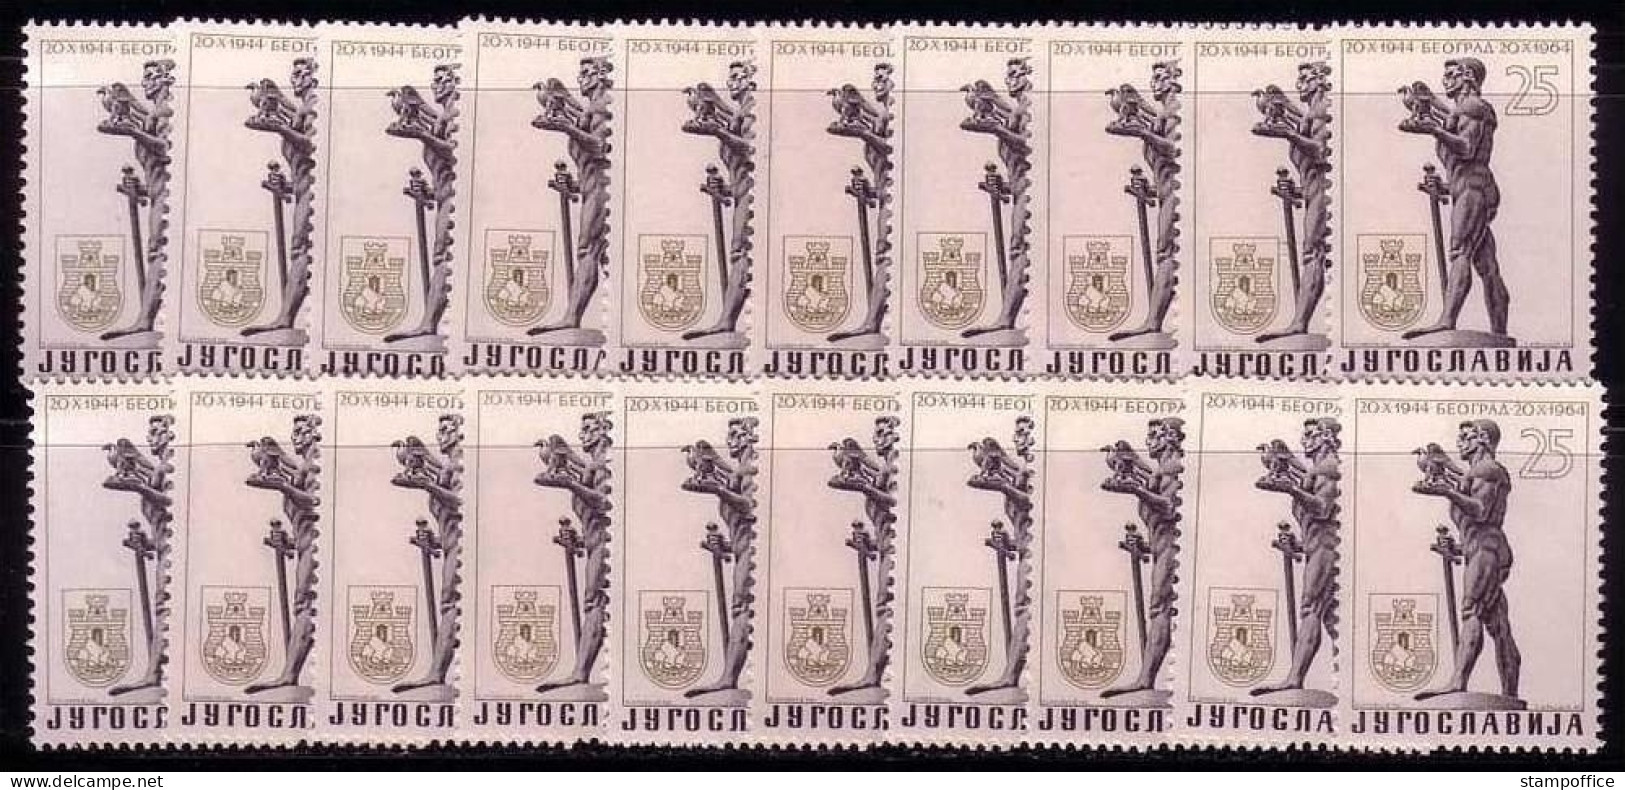 JUGOSLAWIEN 20 X MI-NR. 1094 POSTFRISCH(MINT) BEFREIUNG BELGRADS - STADTWAPPEN - Stamps